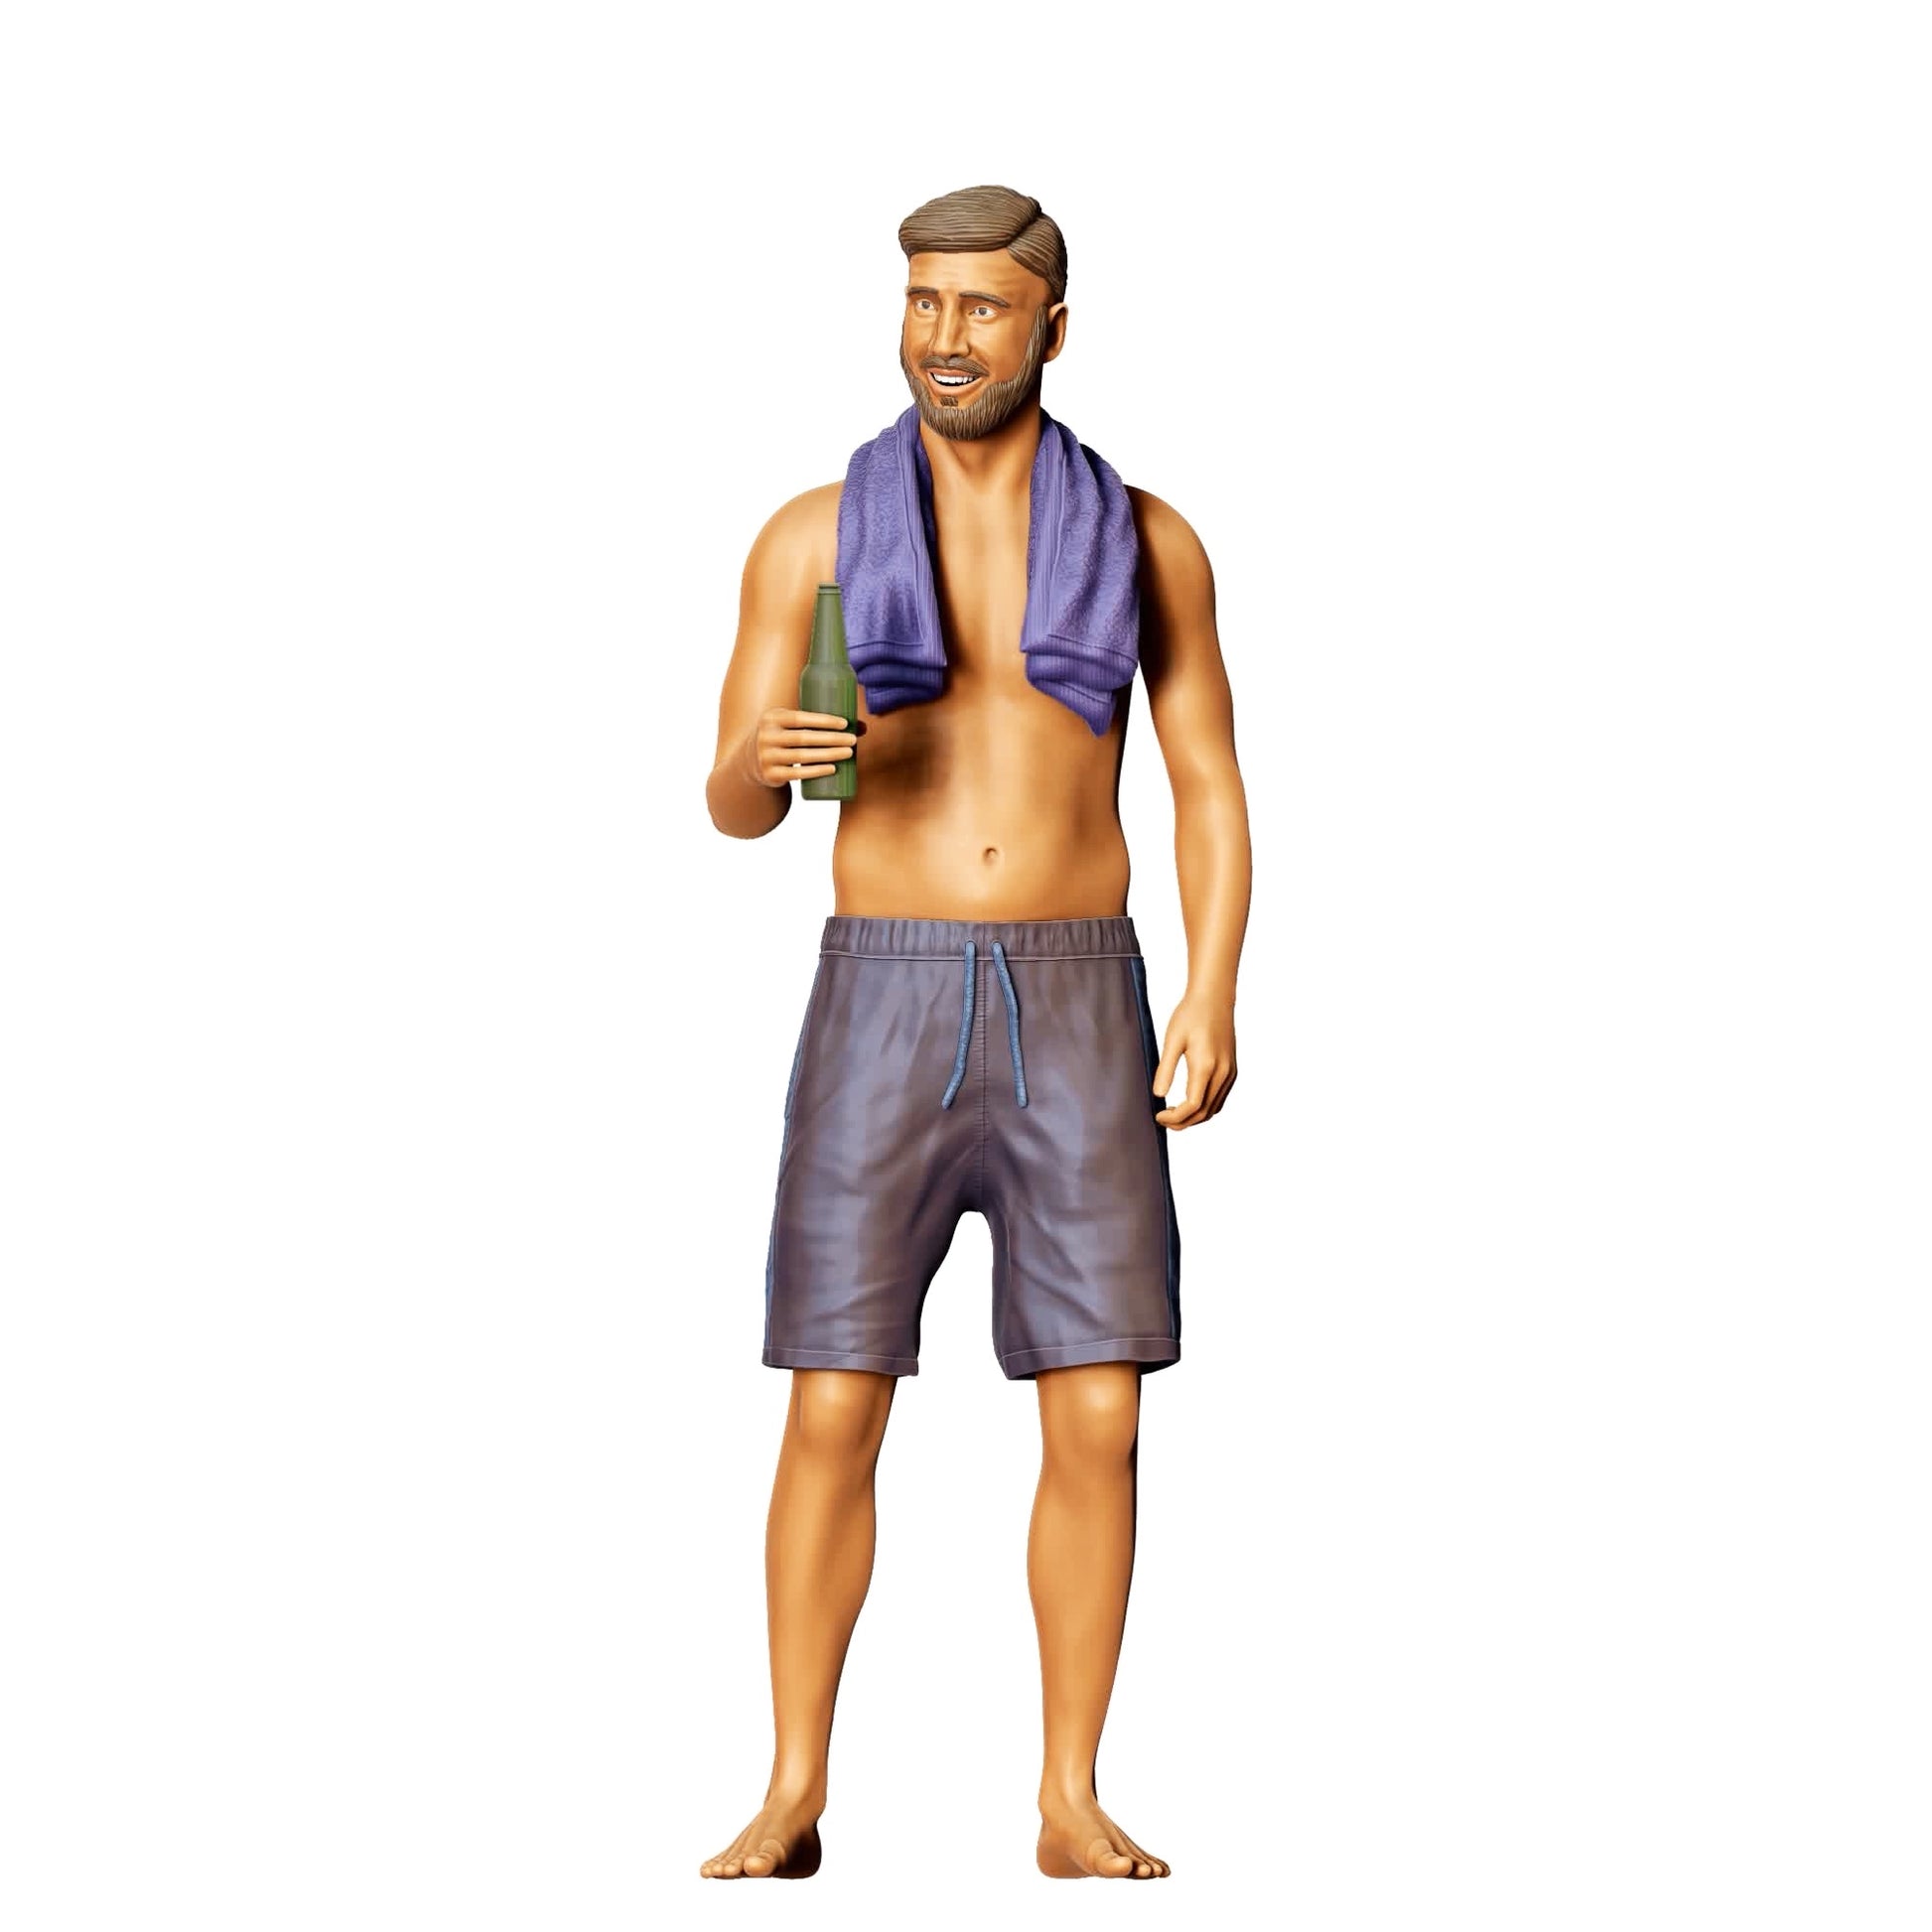 Diorama Modellbau Produktfoto 0: Pool Party Gäste - Mann mit Handtuch und Bierflasche (Ref. Nr. 321)